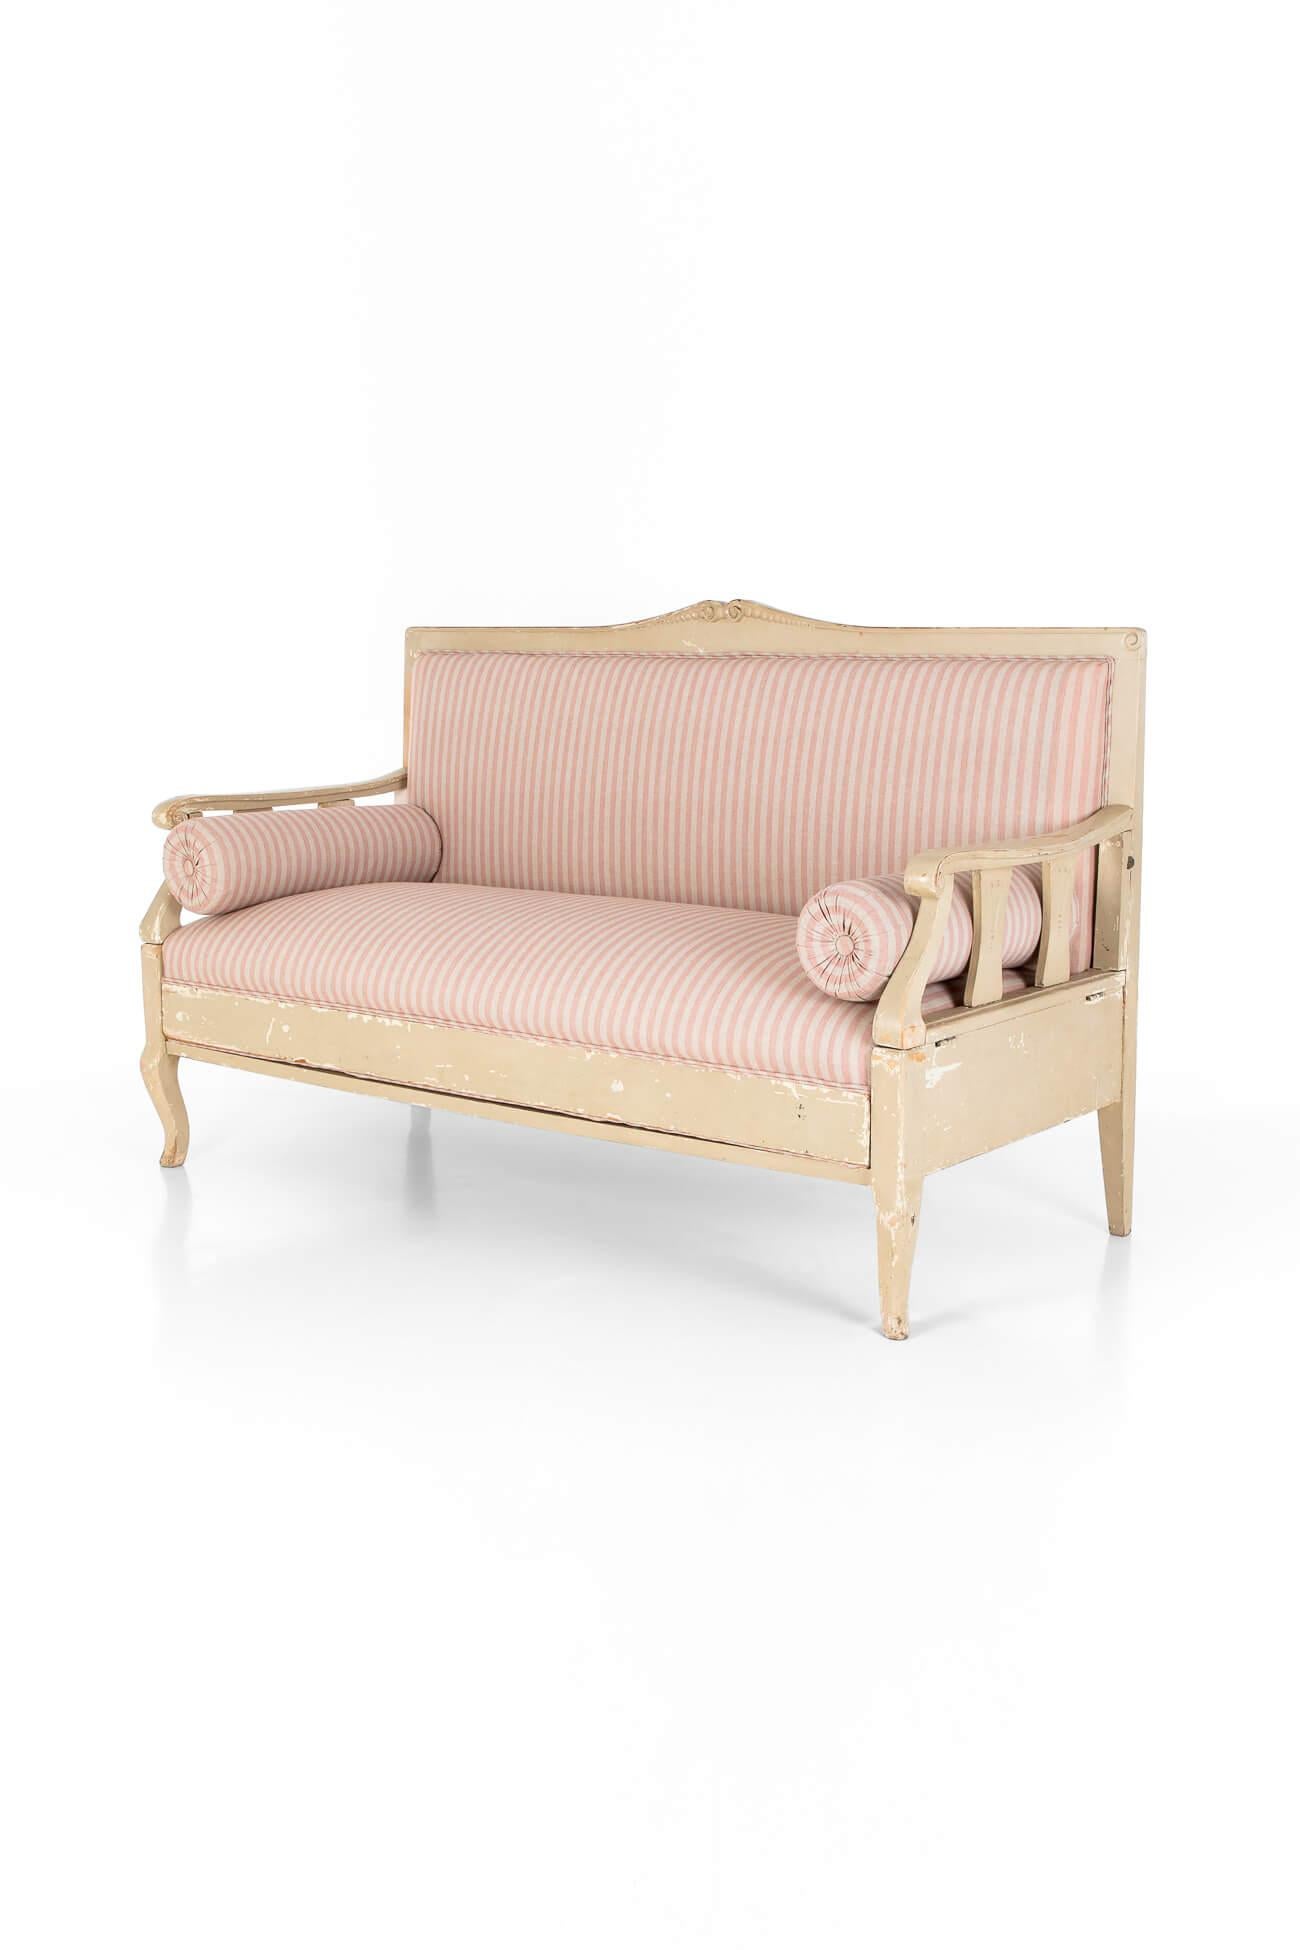 Magnifique canapé suédois de style gustavien en pin sylvestre.

Les extrémités du siège s'effondrent, ce qui permet de rabattre la banquette en un lit plat, qui prolonge la longueur du canapé et offre une option de couchage confortable pour les